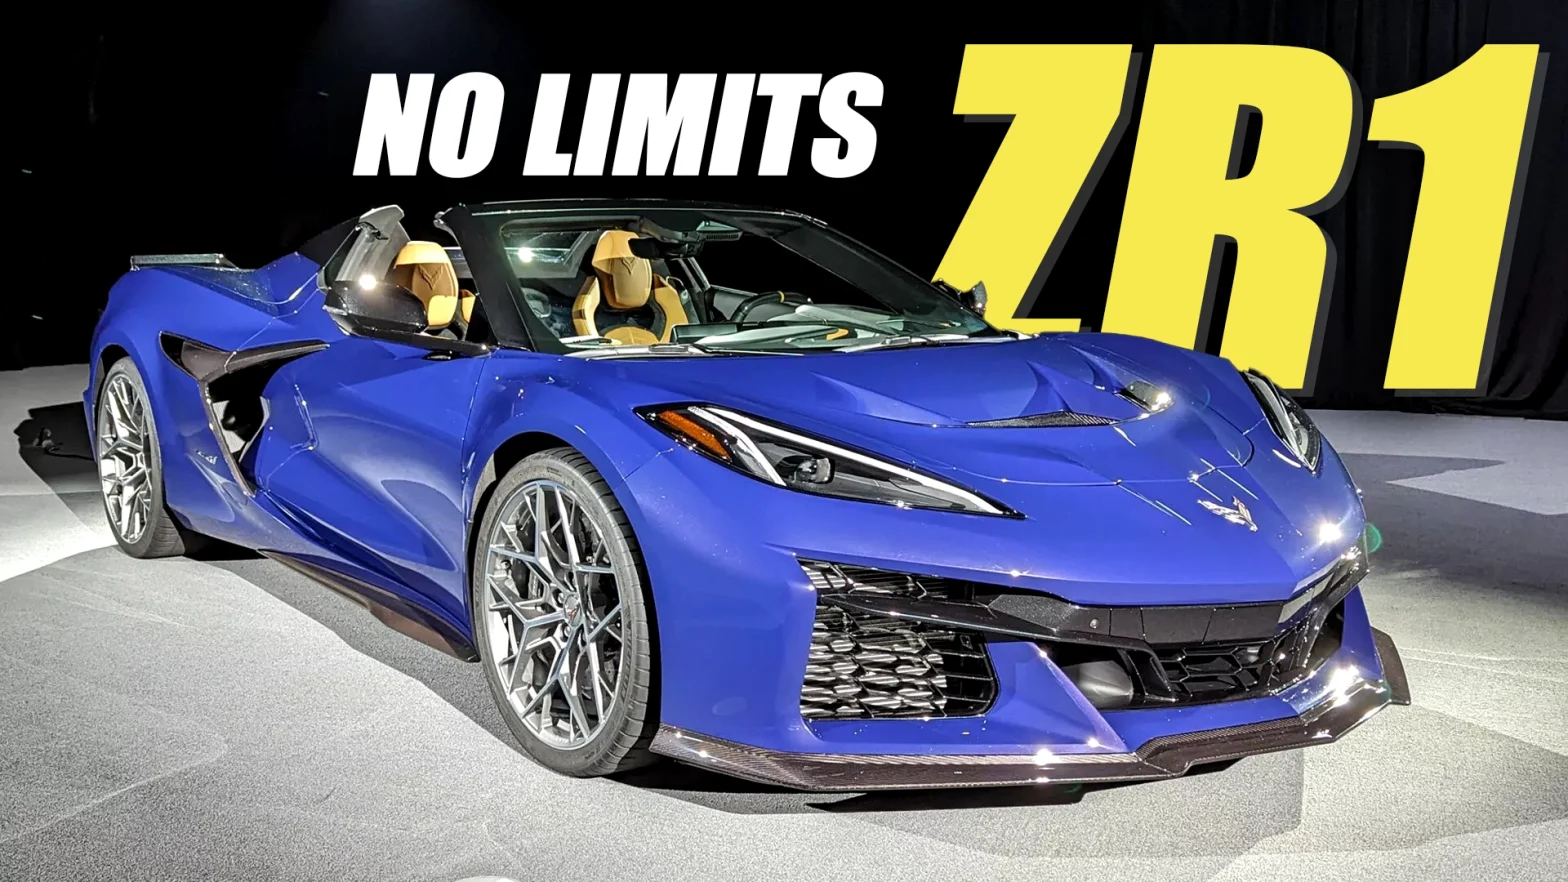 Chevy Won’t Limit Corvette ZR1 Production